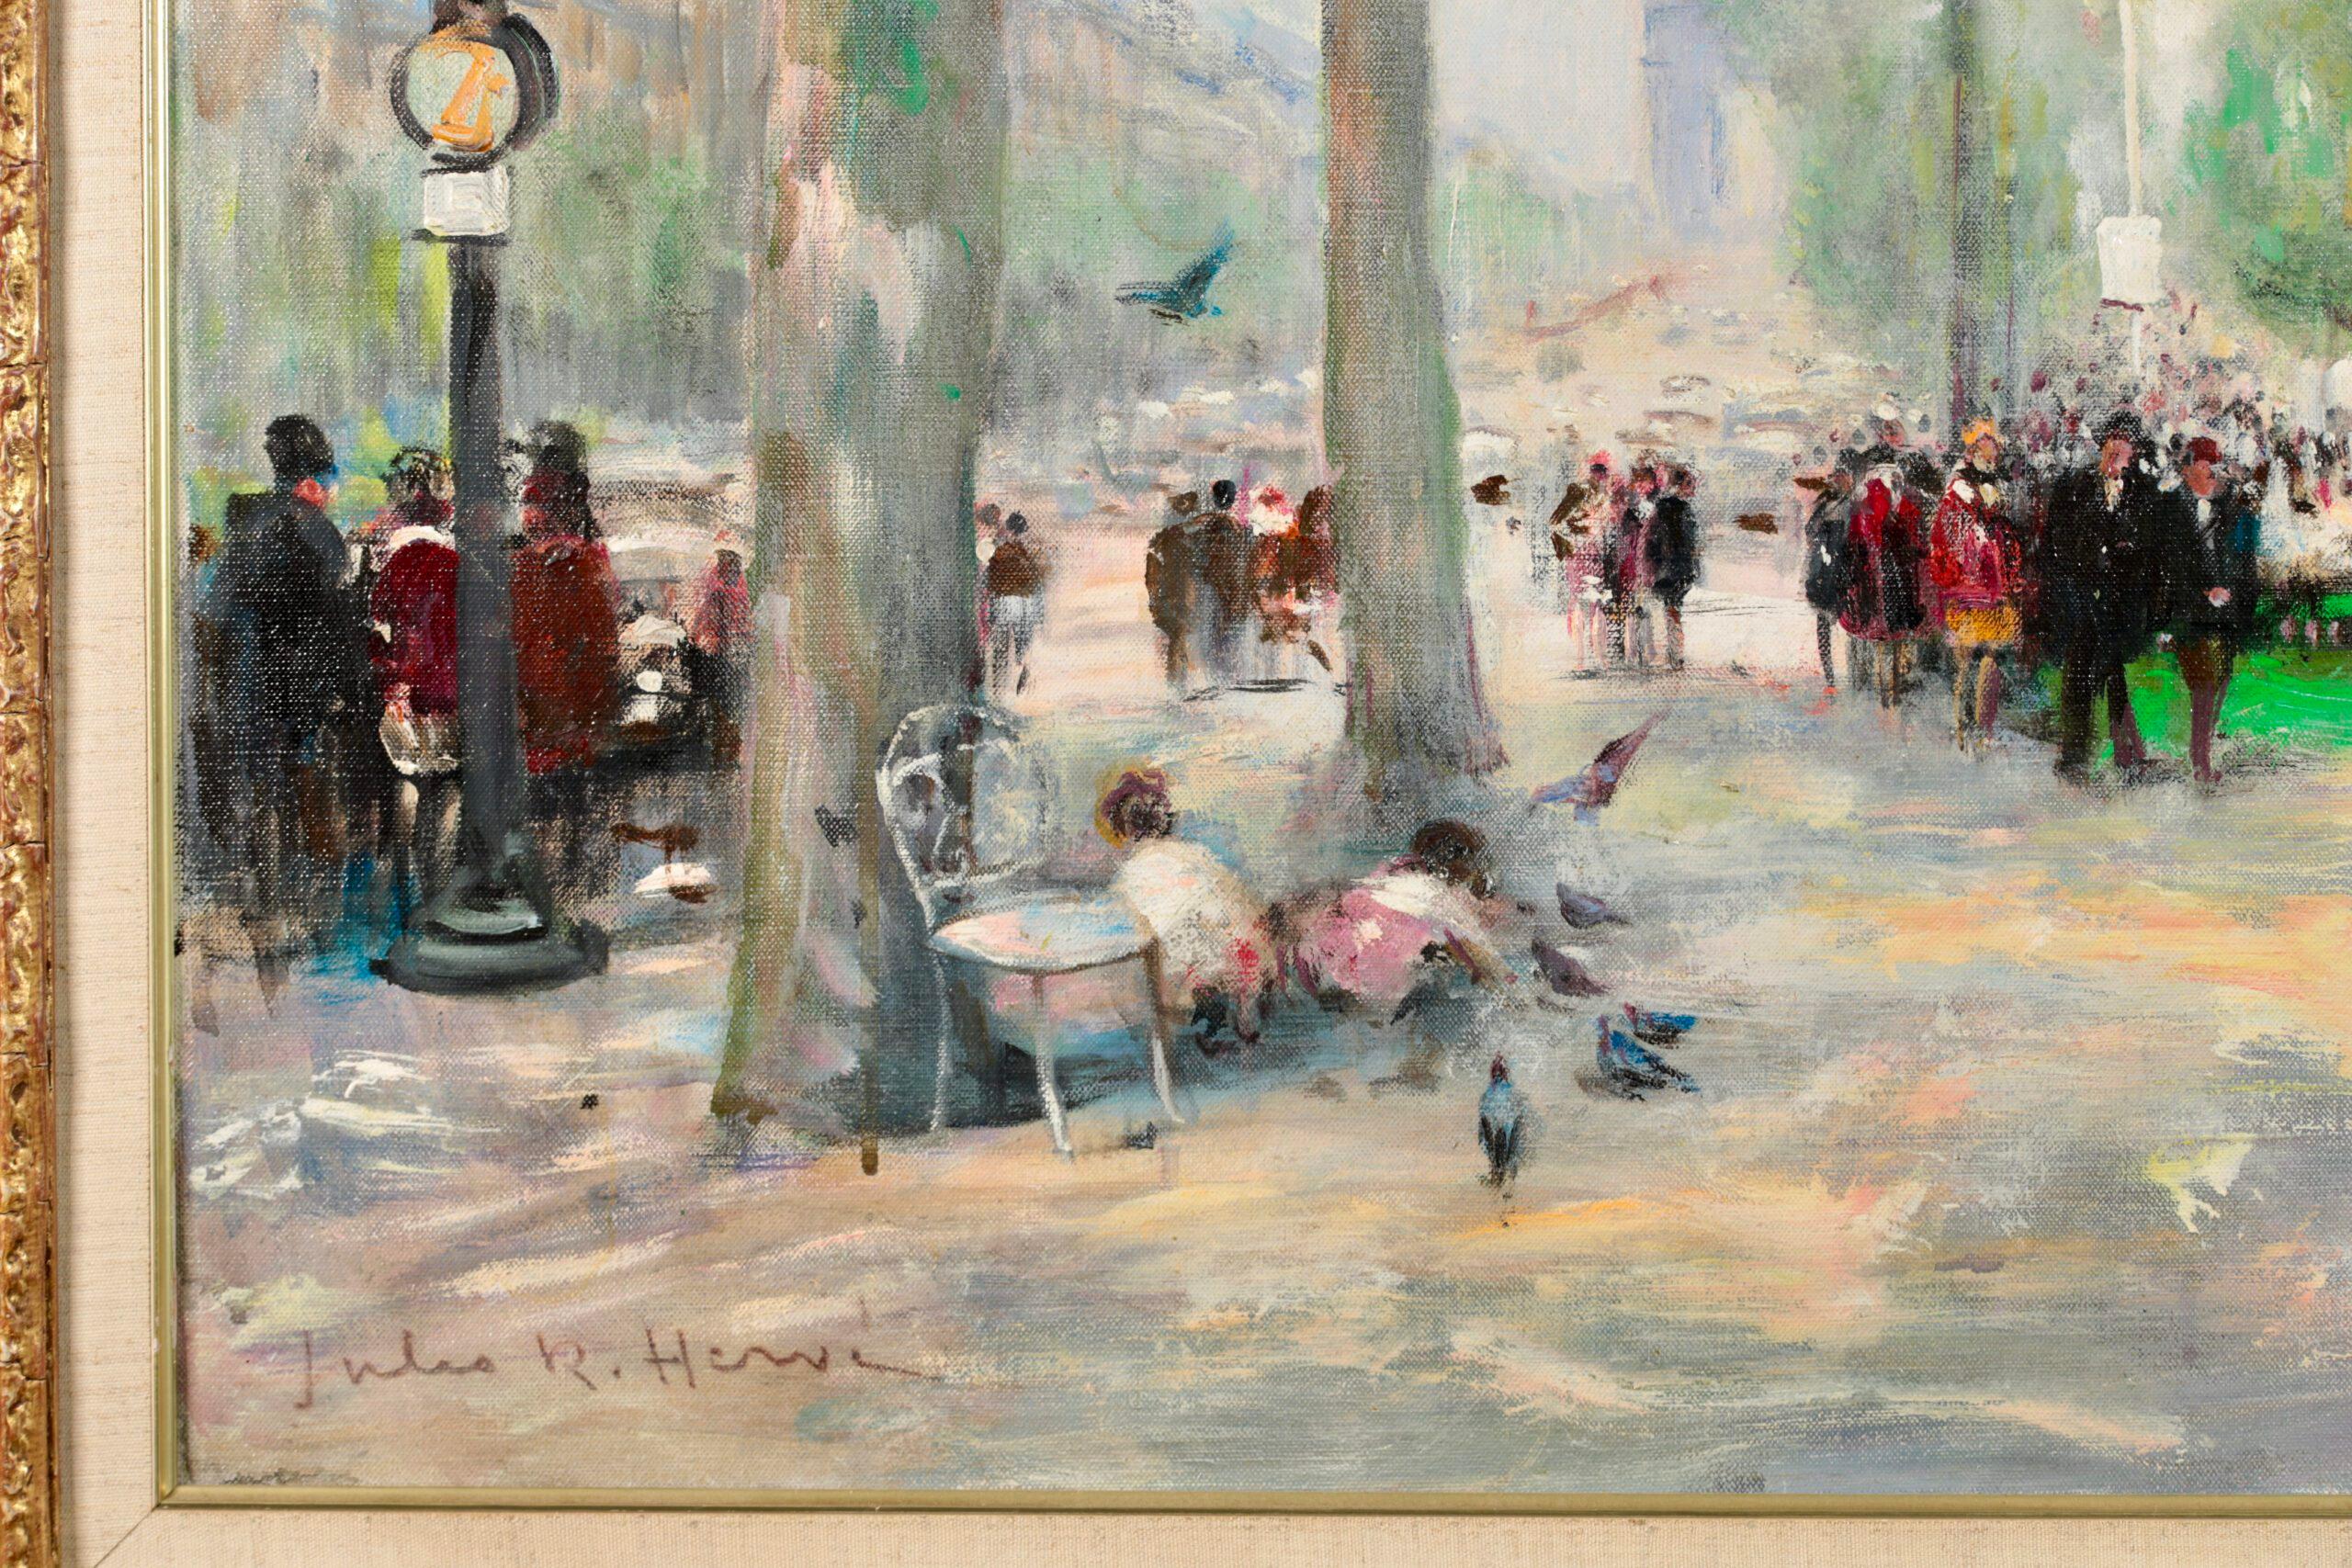 Signiert Figuren und Tiere in Stadtlandschaft Öl auf Leinwand circa 1940 von Französisch impressionistischen Maler Jules Rene Herve. Dieses großformatige Bild zeigt eine Ansicht von Paris an einem strahlenden Sommertag. Die Kinder können im Schatten